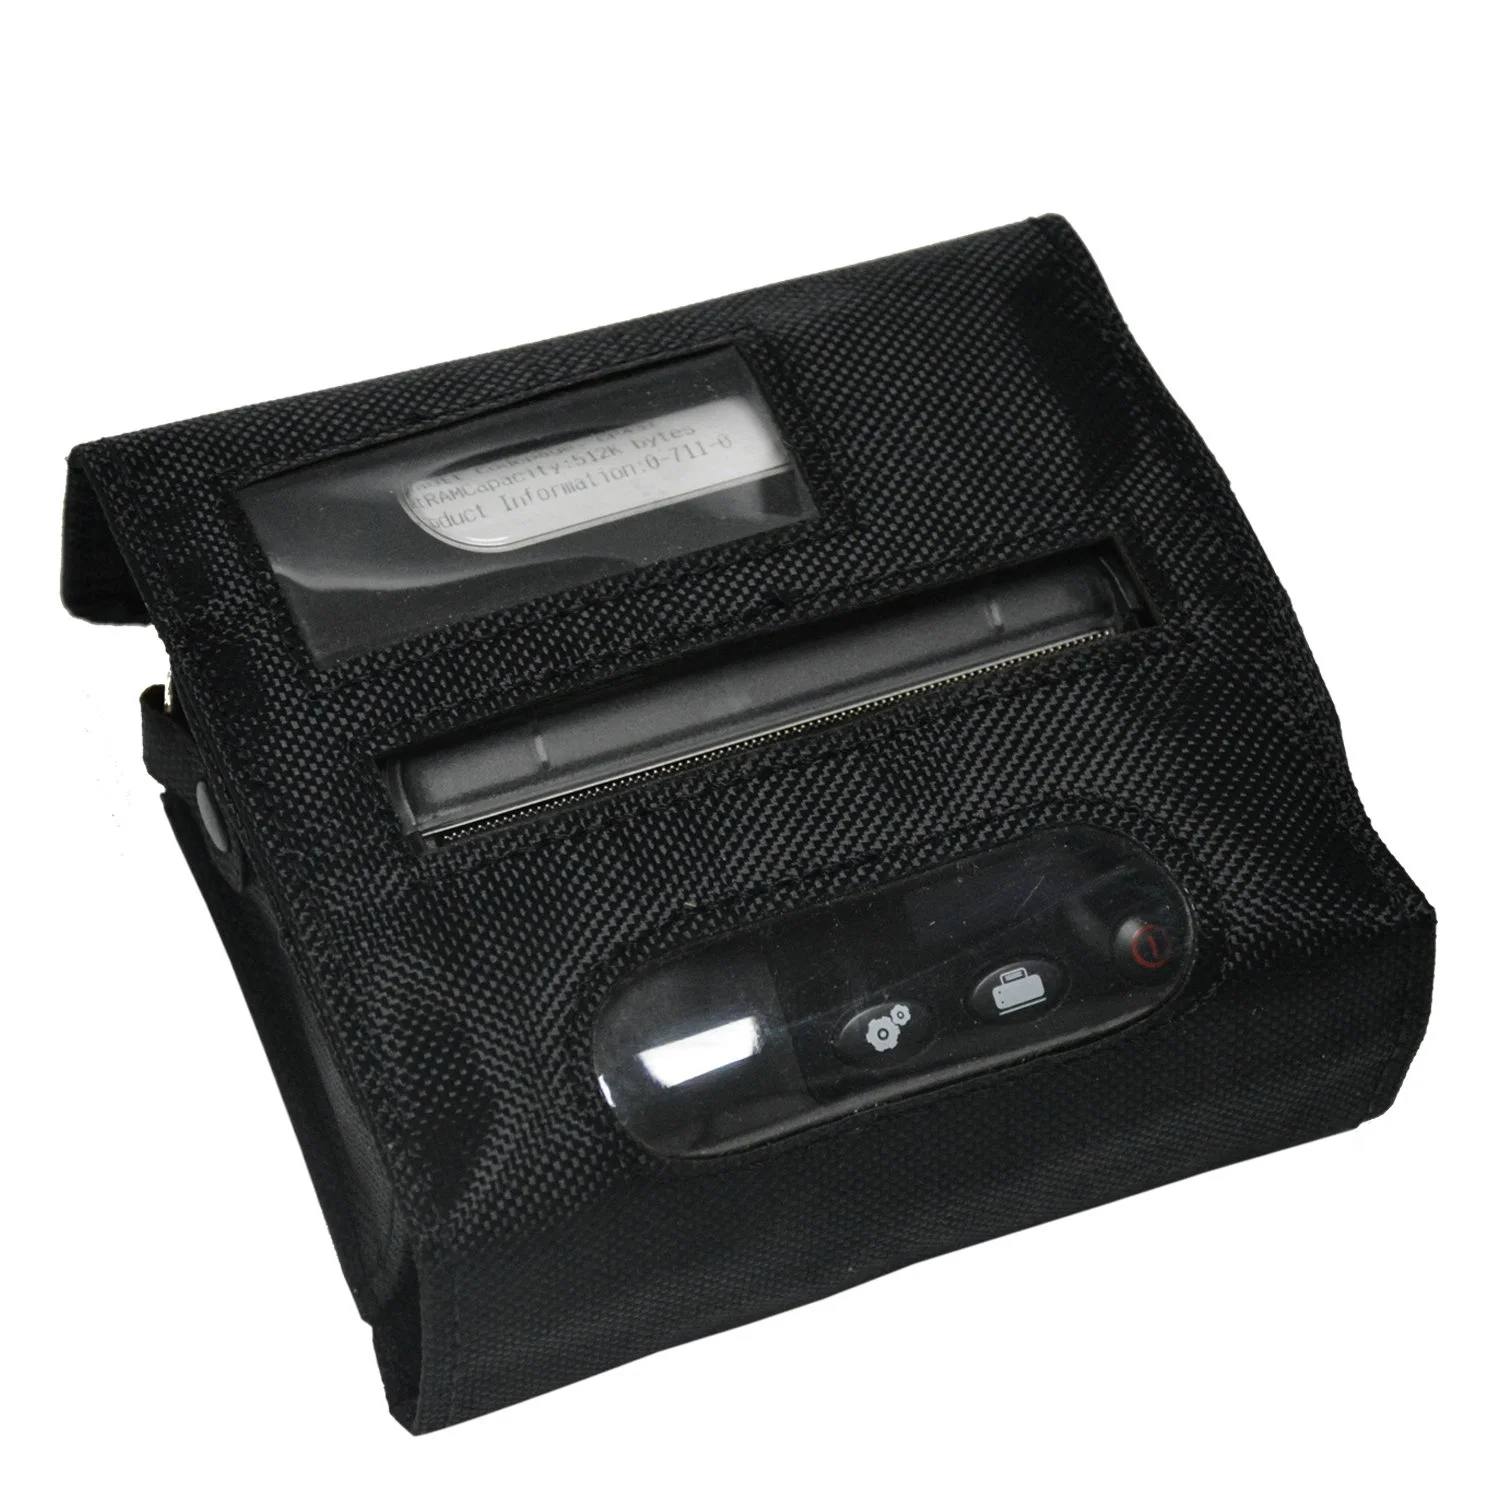 طابعة لاسلكية صغيرة الحجم تعمل بتقنية Bluetooth ومحمولة طابعة الإيصالات الحرارية المحمولة هاتف Android iOS PC Pocket Bill Impresoras